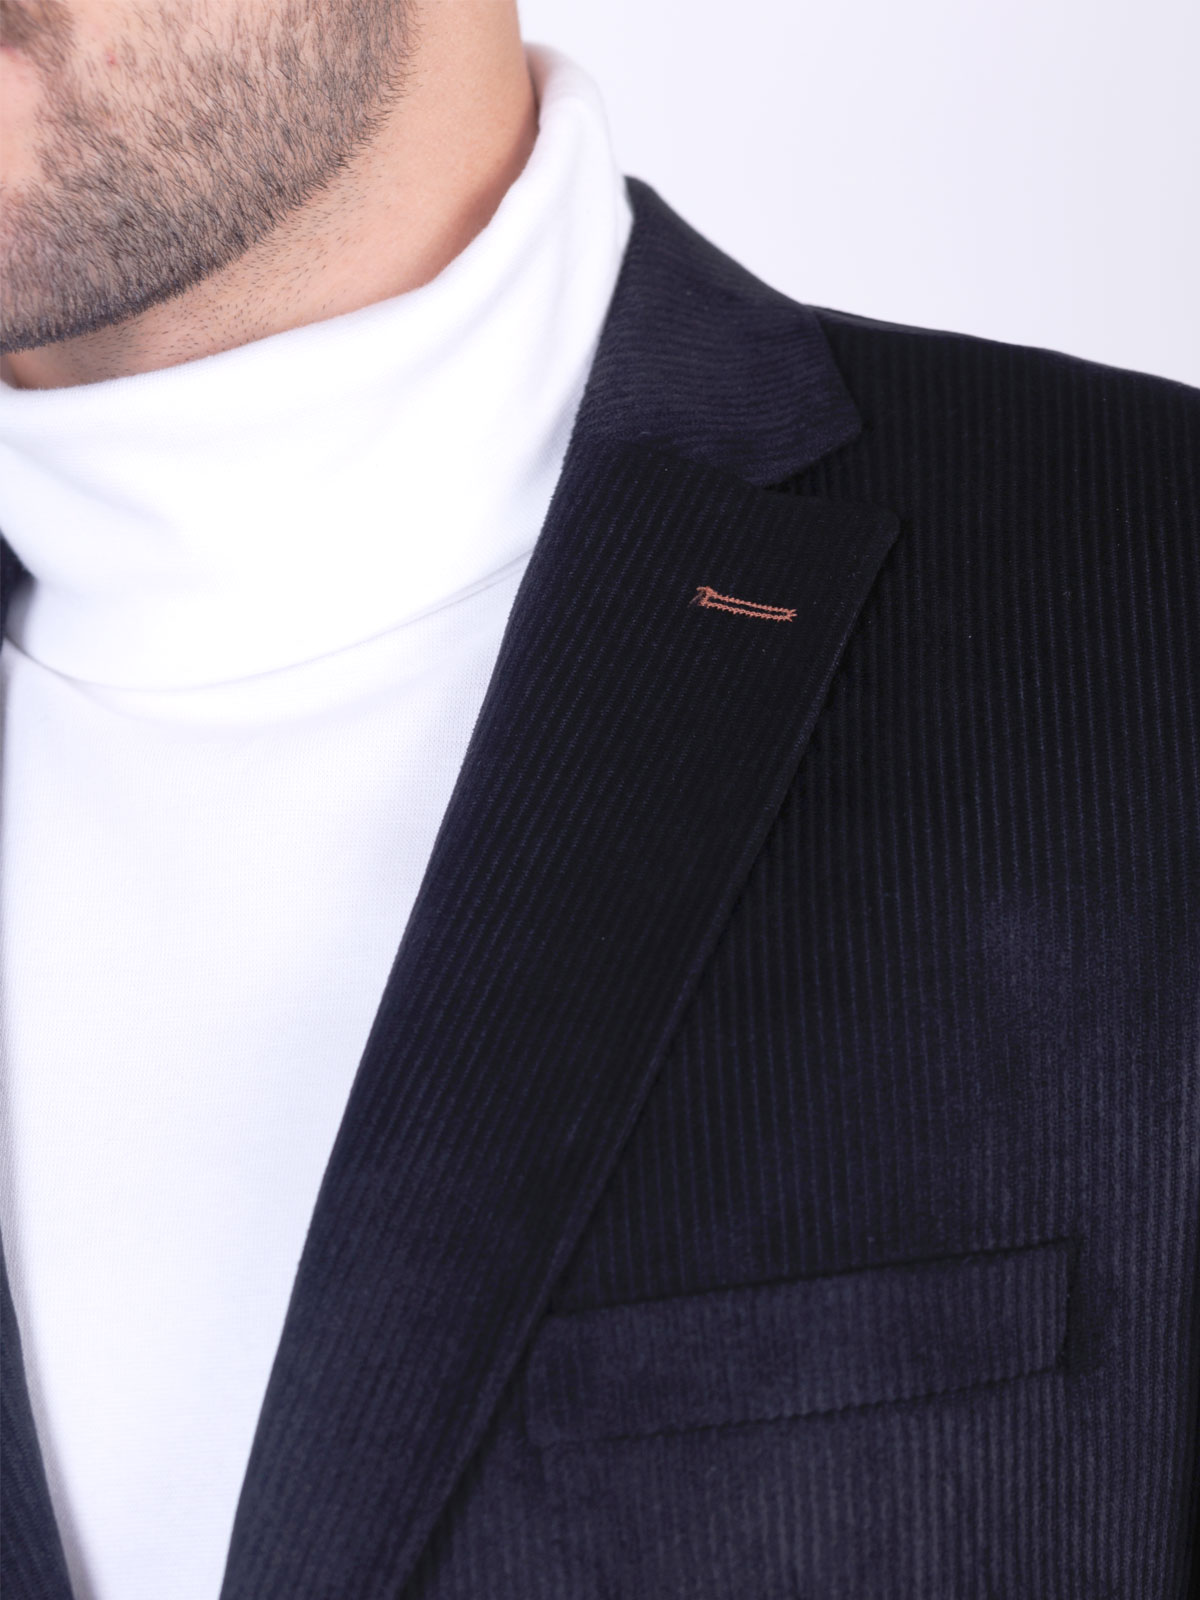 Ανδρικό ριγέ κοστούμι σε μαύρο χρώμα - 68069 € 191.22 img3